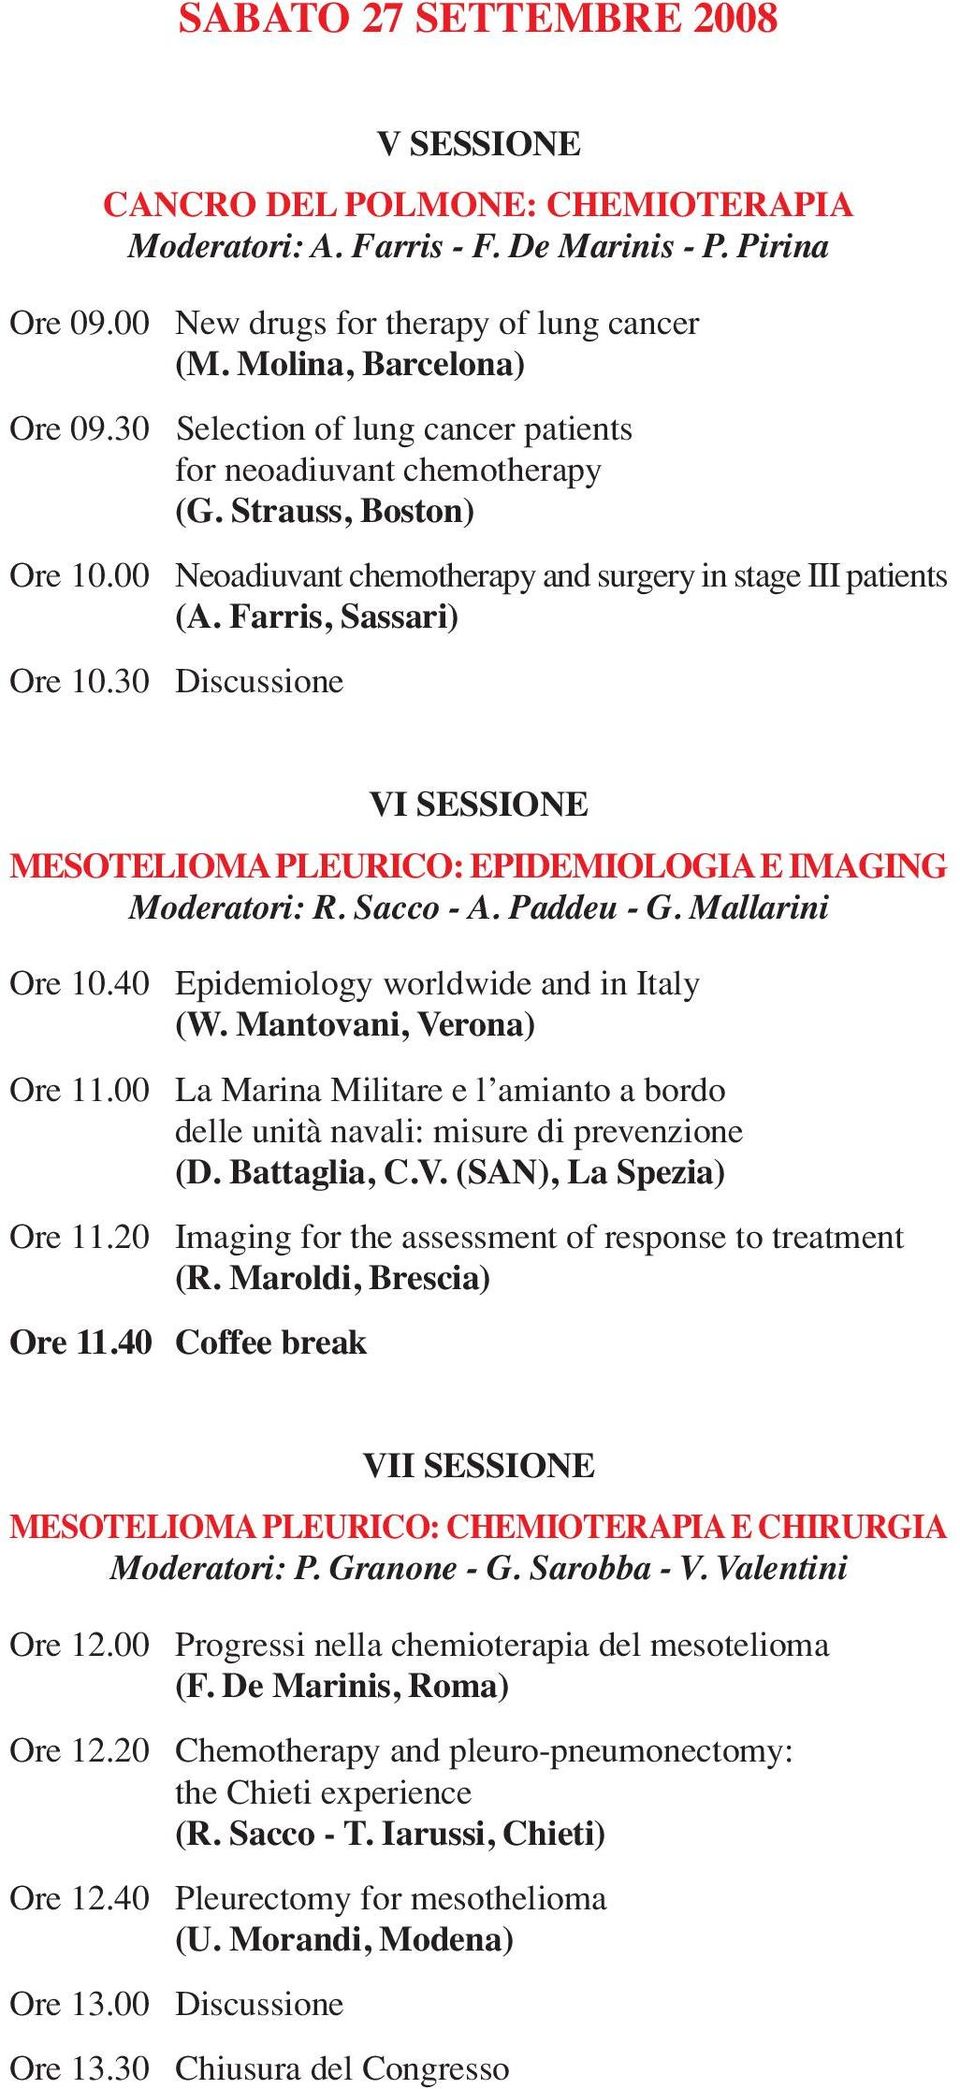 30 Discussione VI SESSIONE MESOTELIOMA PLEURICO: EPIDEMIOLOGIAE IMAGING Moderatori: R. Sacco - A. Paddeu - G. Mallarini Ore 10.40 Epidemiology worldwide and in Italy (W. Mantovani, Verona) Ore 11.